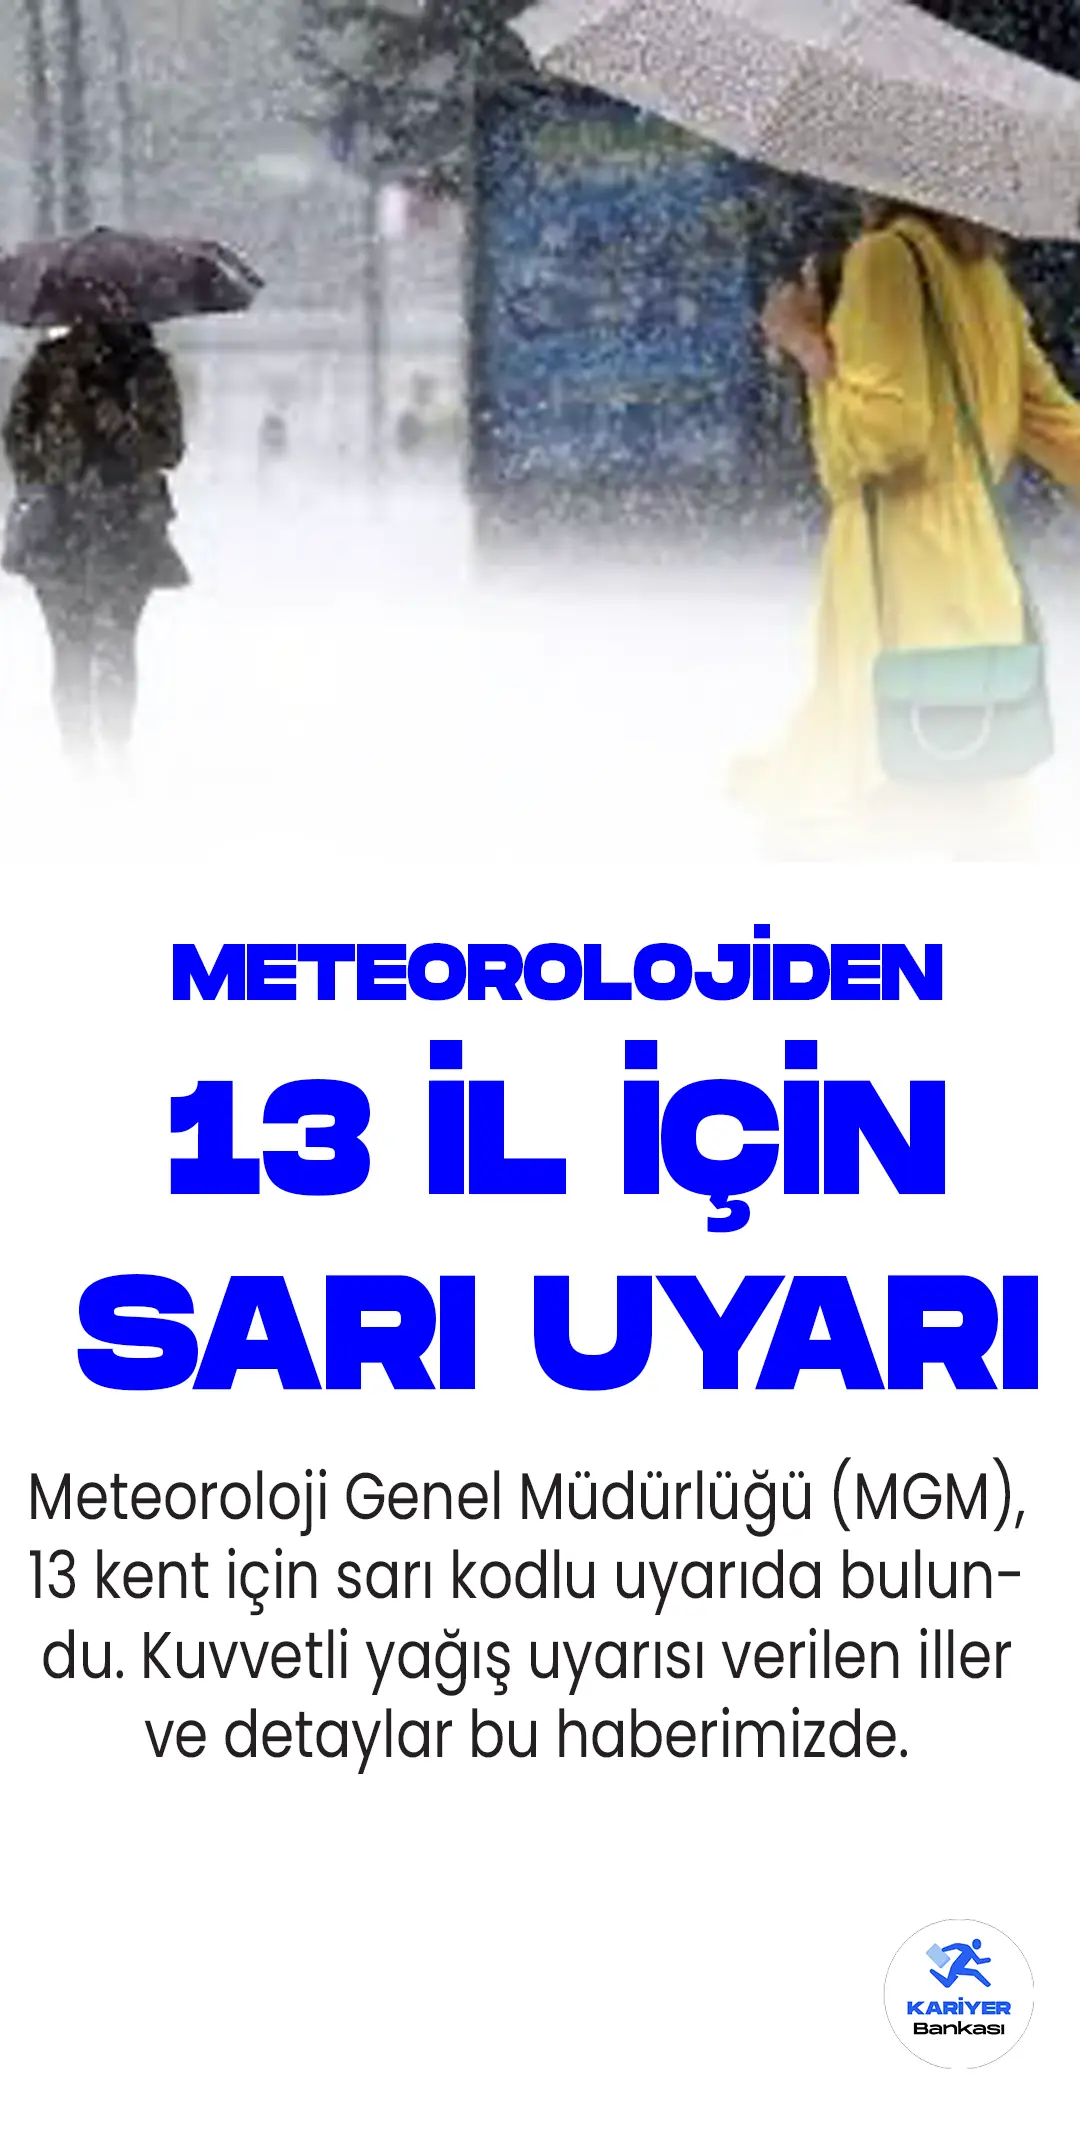 Meteoroloji Genel Müdürlüğü (MGM), 13 kent için sarı kodlu uyarıda bulundu. Kuvvetli yağış uyarısı verilen iller ve detaylar bu haberimizde.